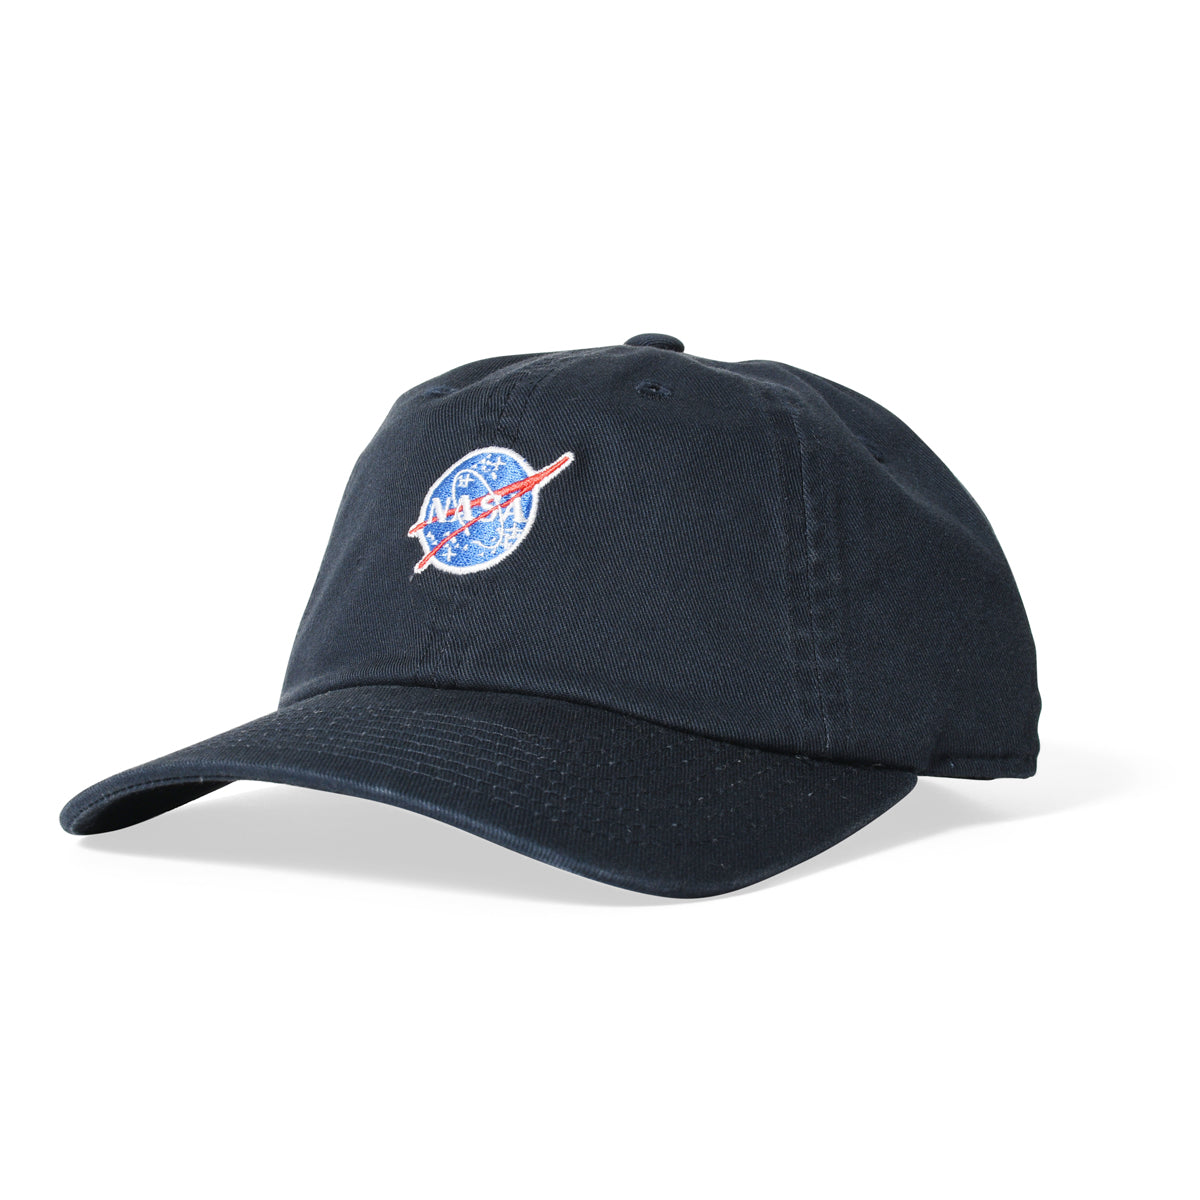 AMERICAN NEEDLE Ballpark Micro Logo - NASA【21015ANASA】